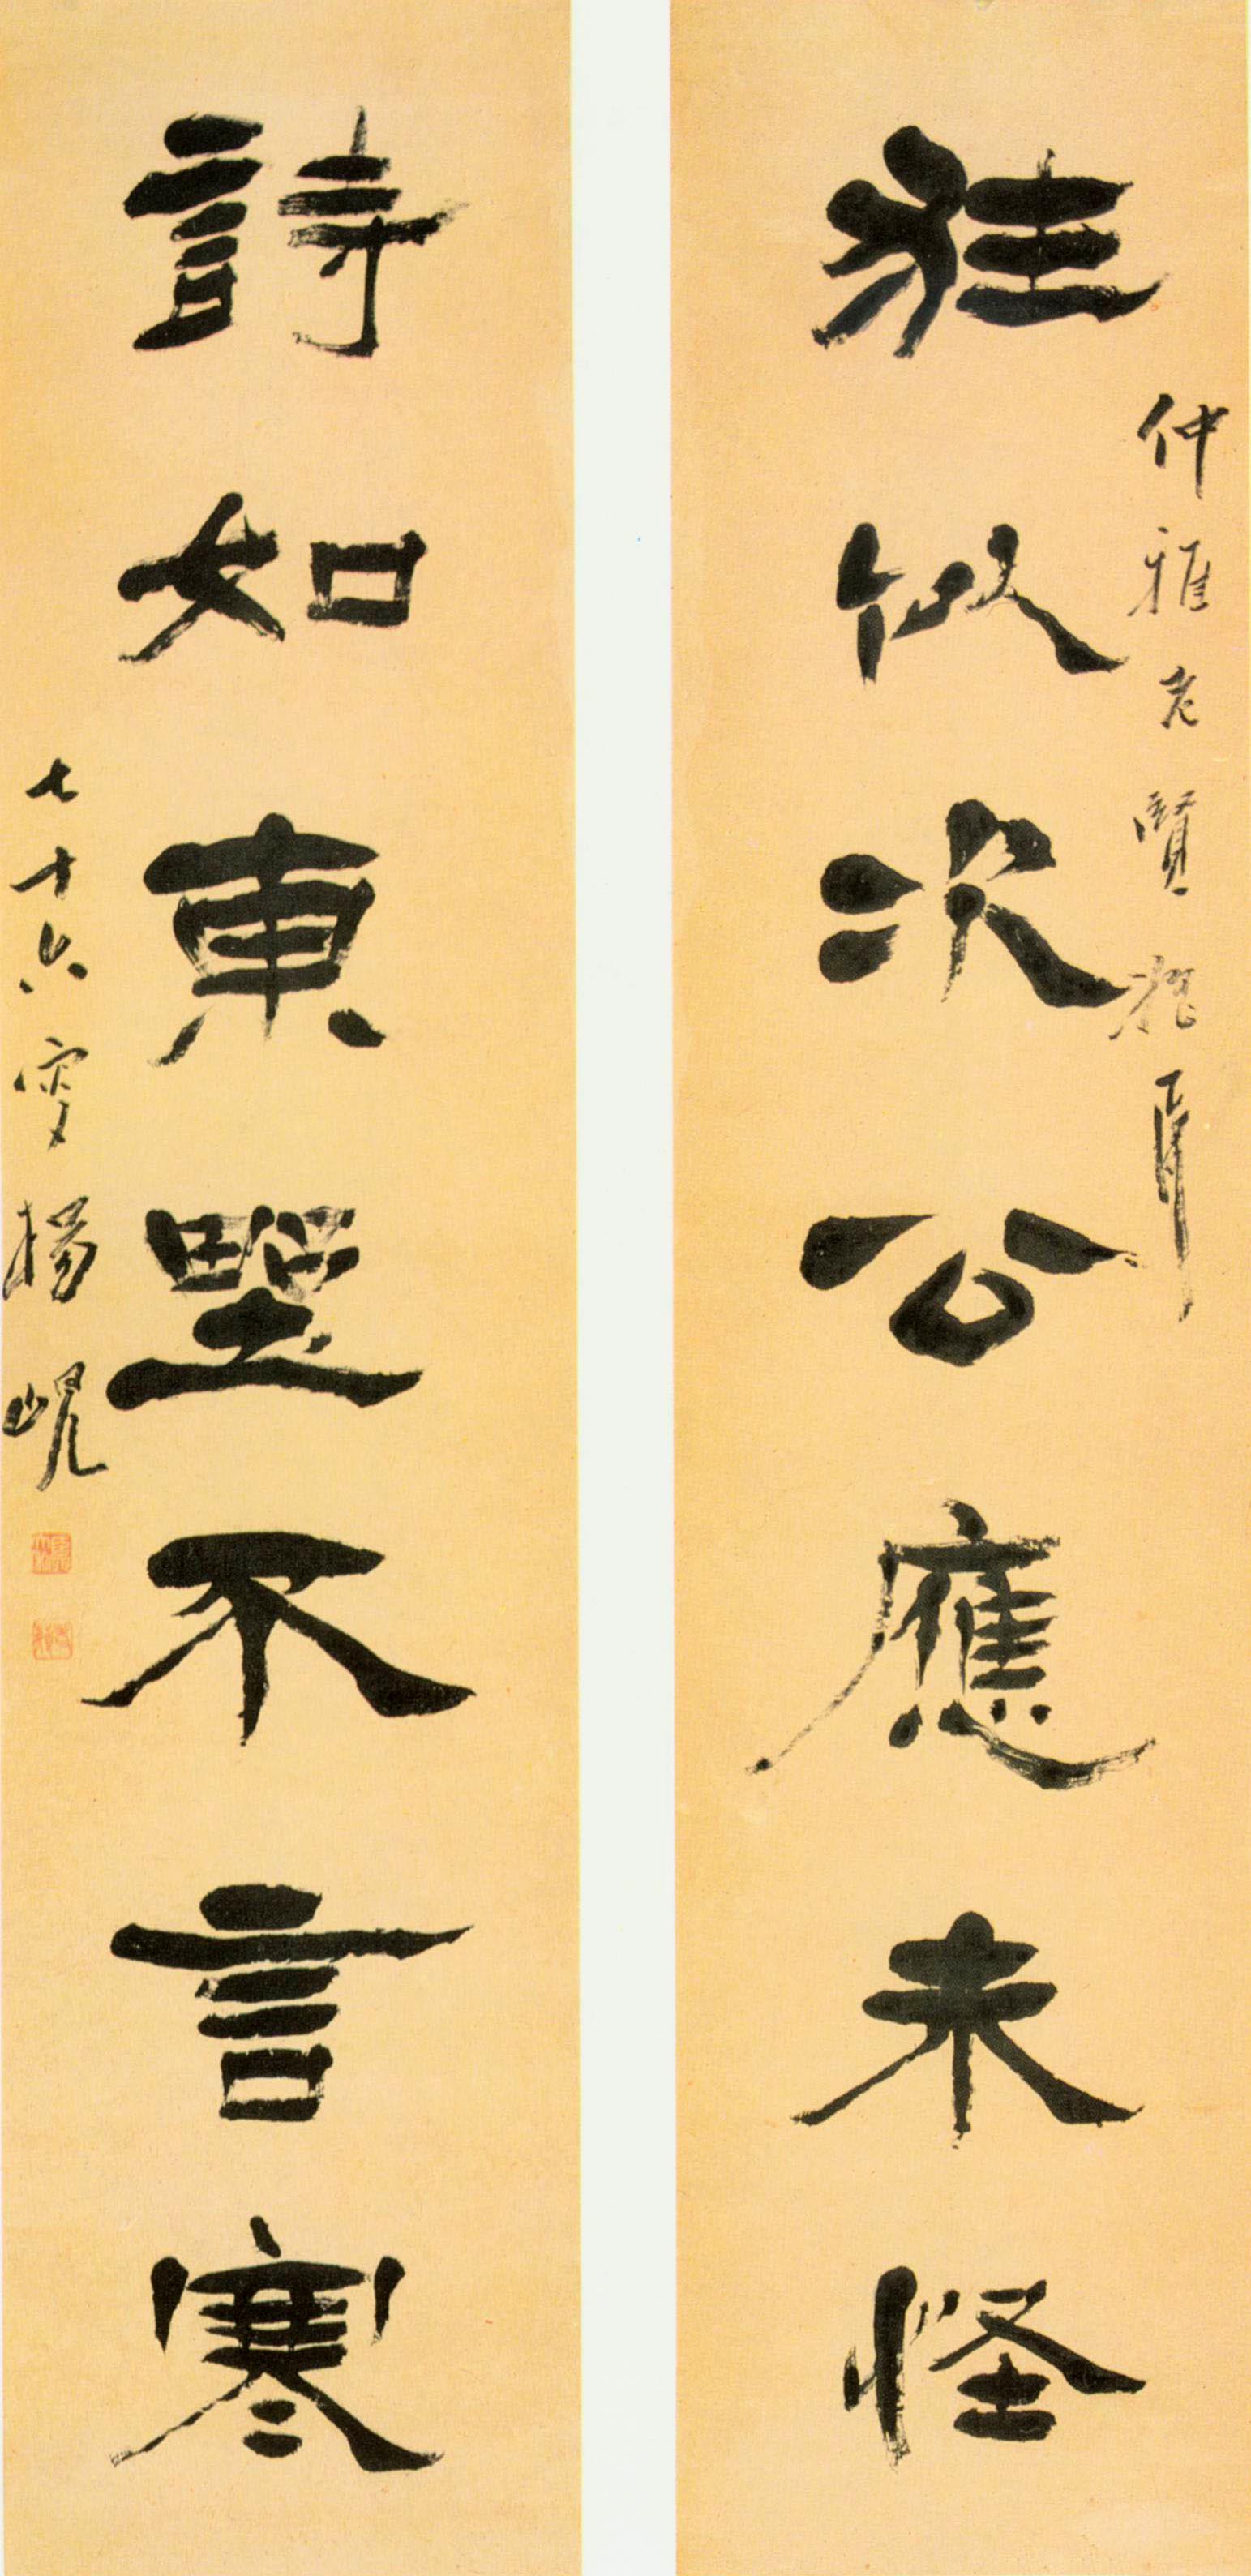 杨岘《隶书狂似诗如七言联》-北京故宫博物院藏 (图1)